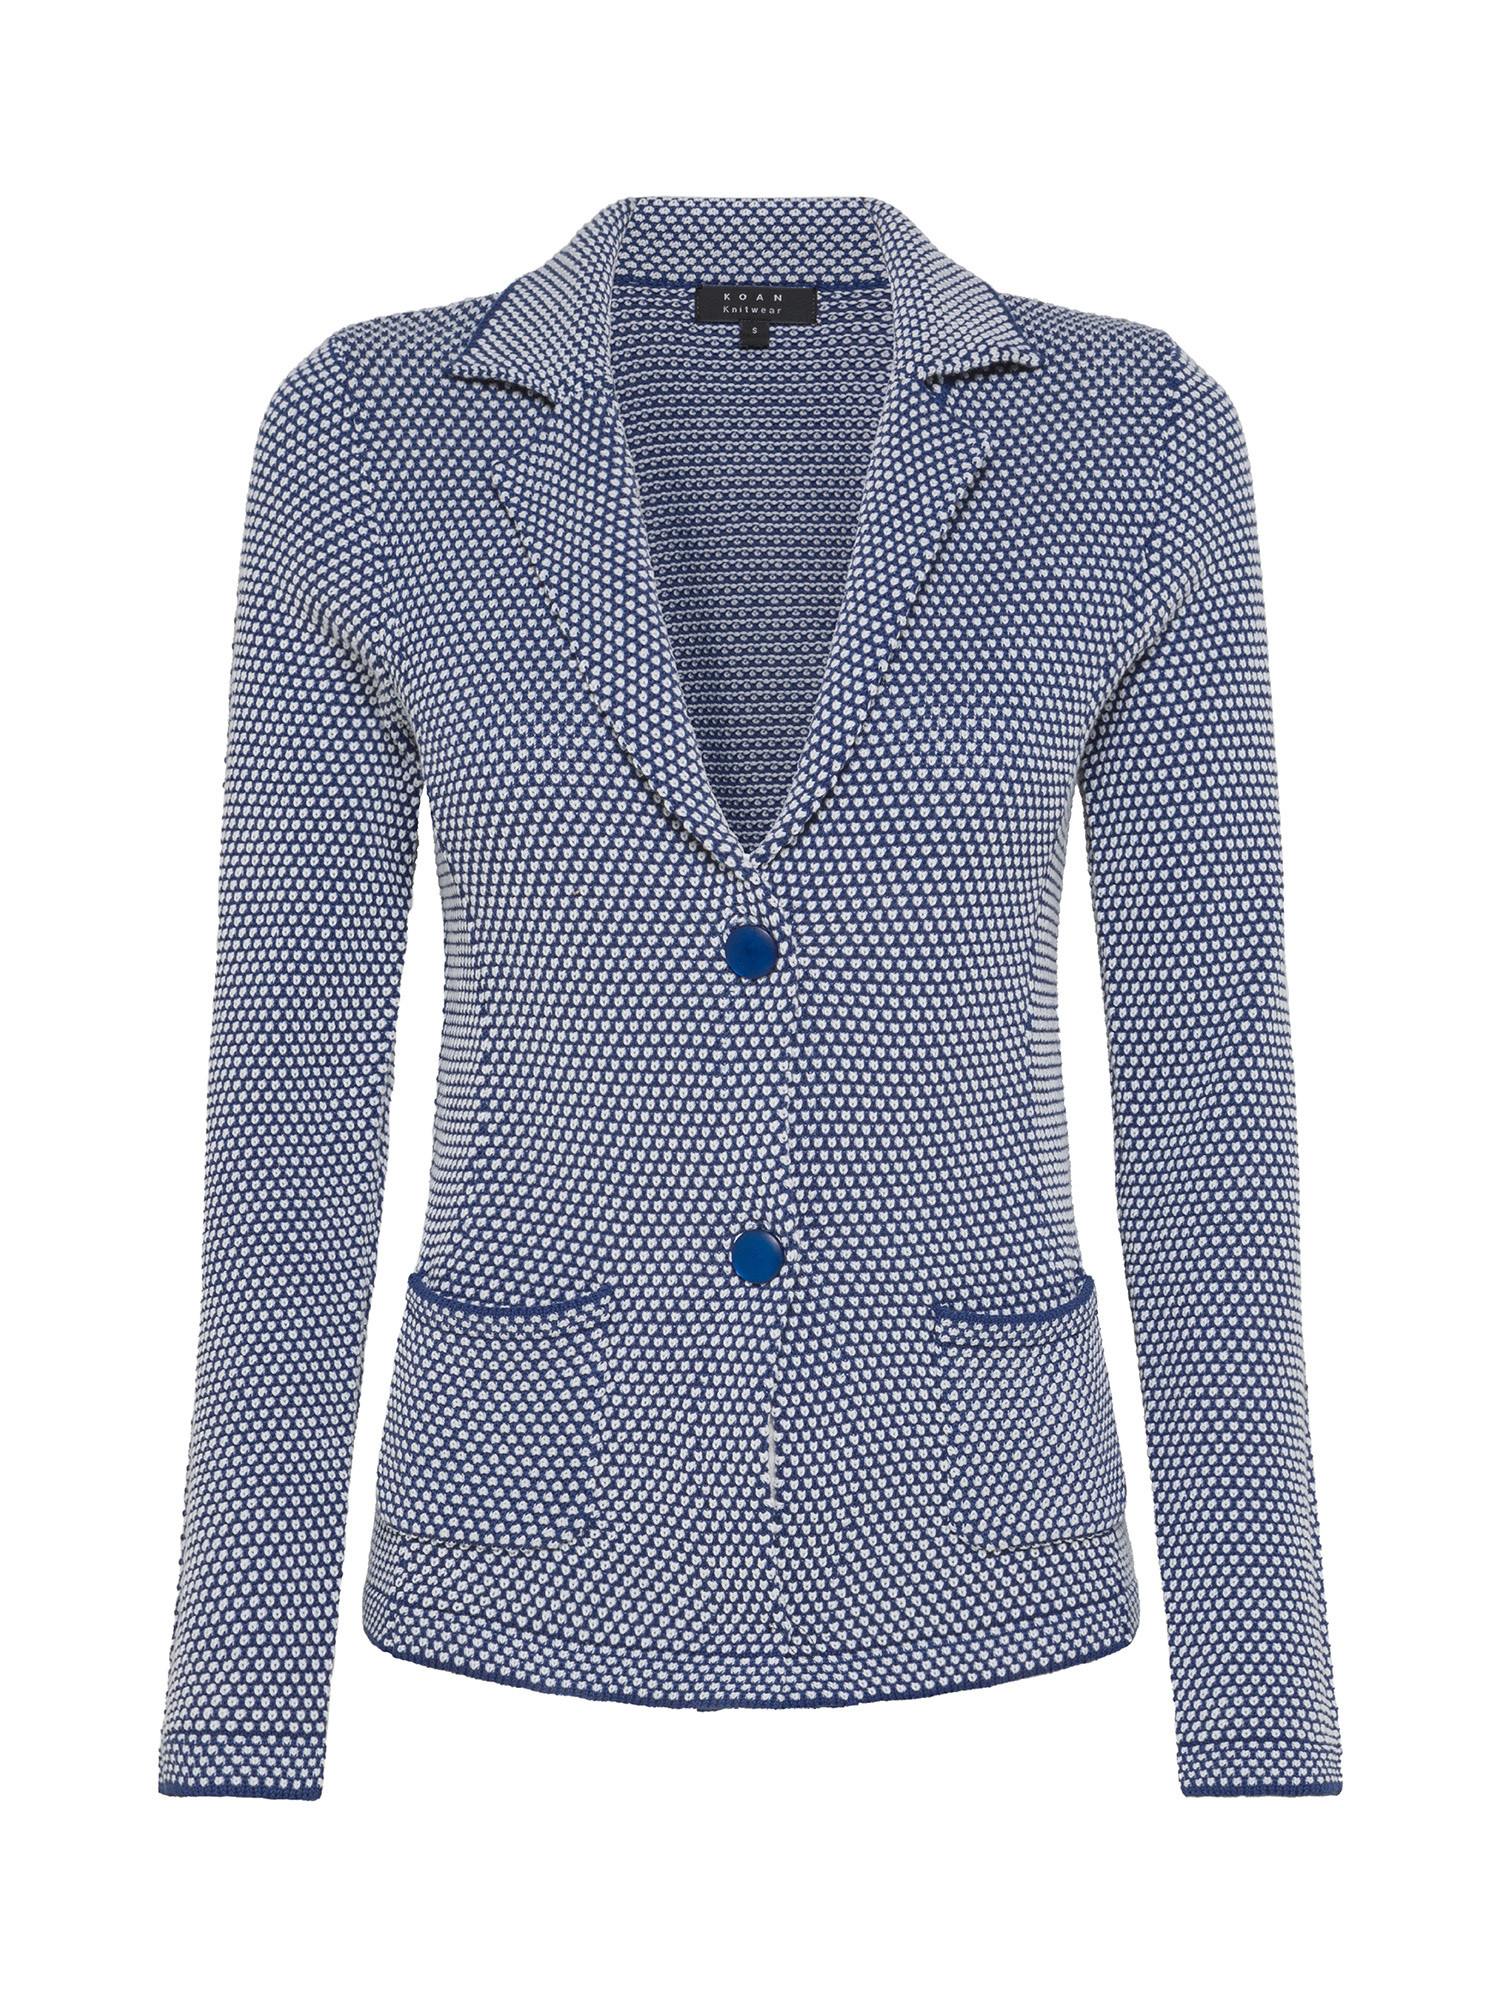 Koan - Blazer in maglia a punto riso bicolor in cotone, Blu, large image number 0